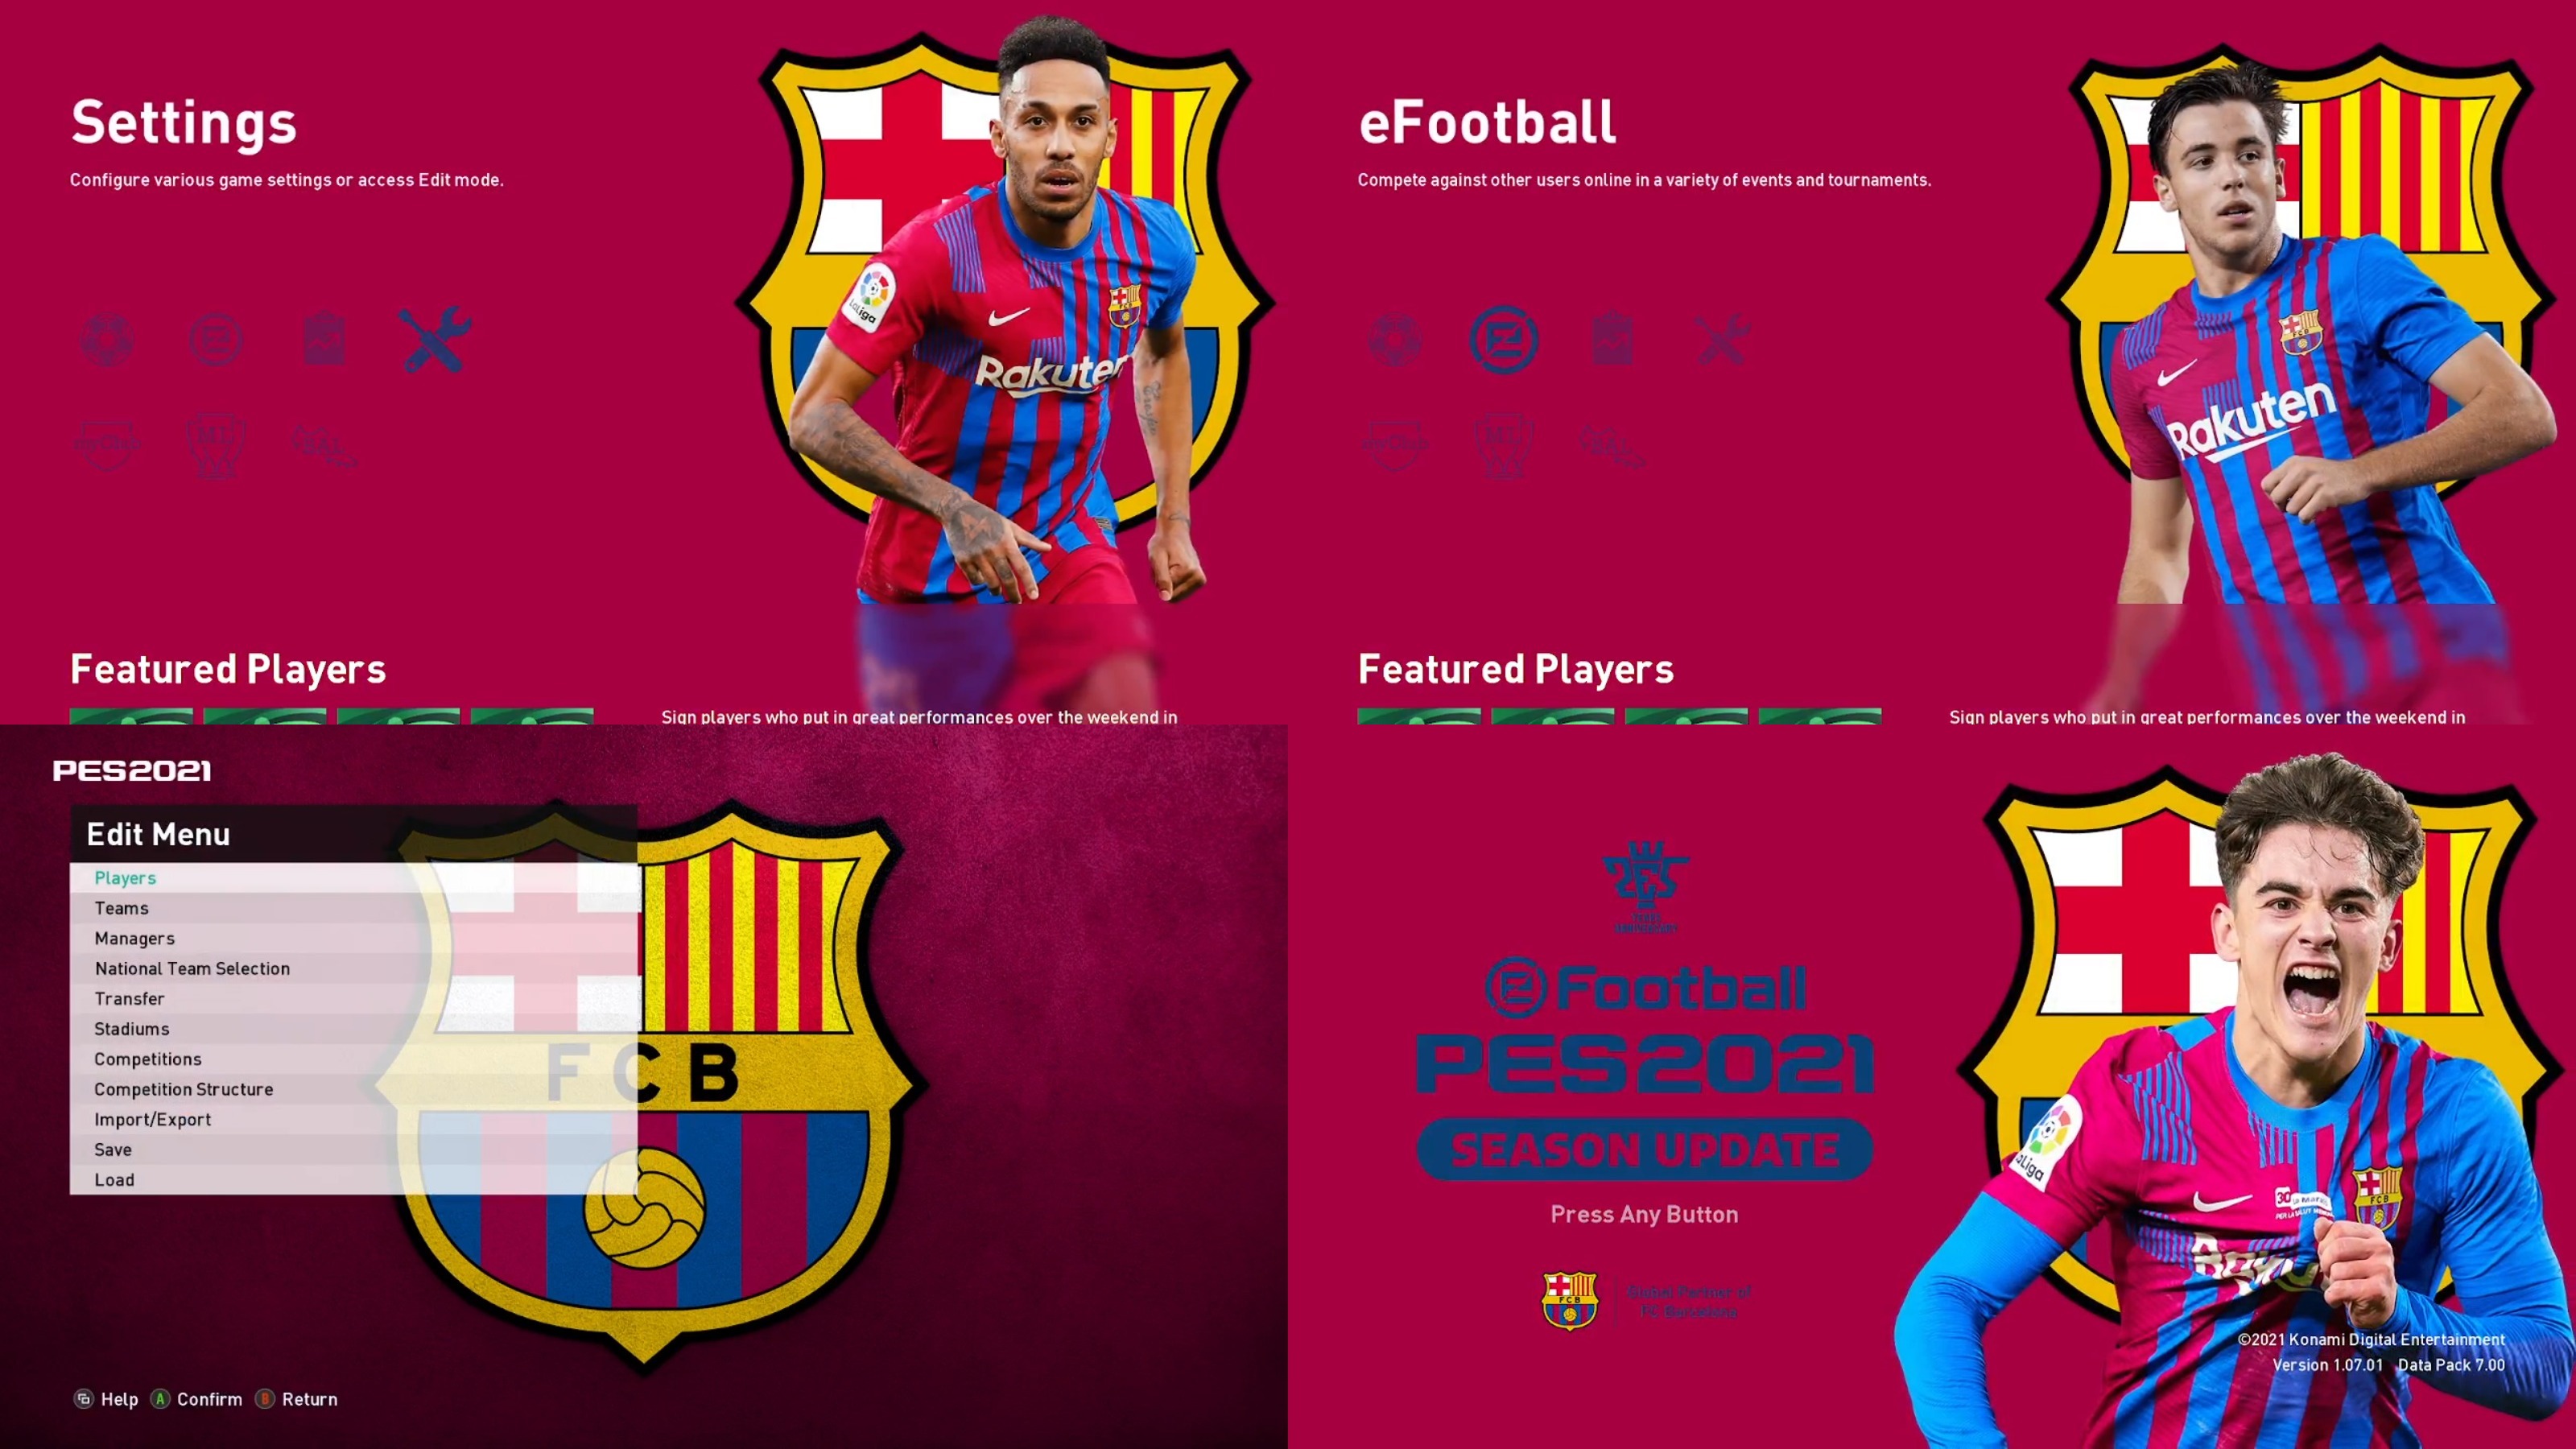 Menu PES 2021 FC Barcelona 2021/2022 với chủ đề câu lạc bộ sẽ khiến những fan của Barca không thể bỏ lỡ. Với hình ảnh đẹp mắt, âm thanh sống động và các tính năng vượt trội, việc trải nghiệm menu PES 2021 Barca sẽ không kém phần thú vị. Hãy nhanh tay xem ngay!